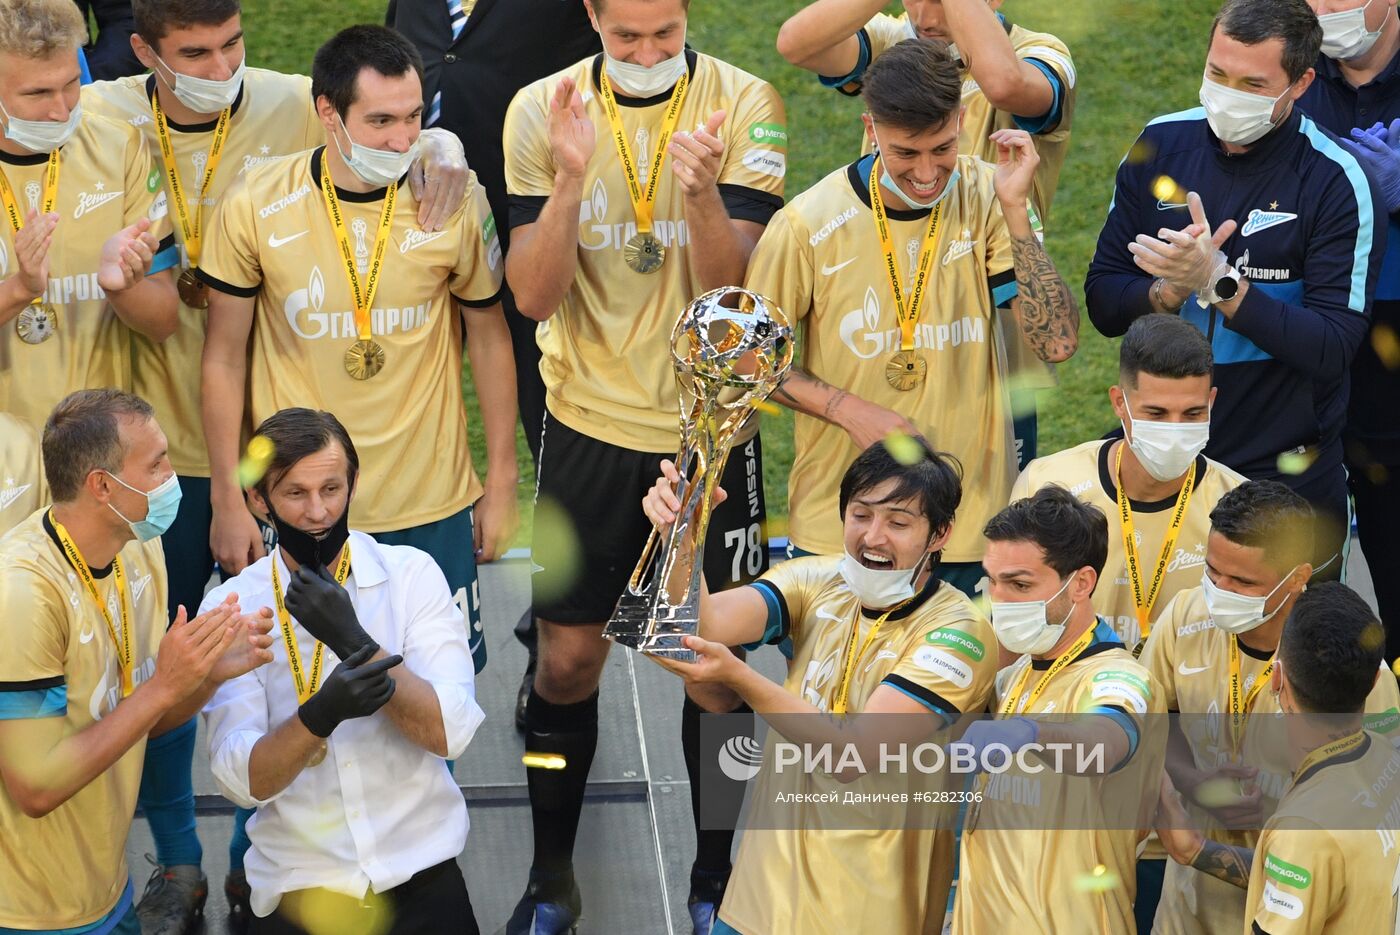 Церемония награждения чемпионов России по футболу